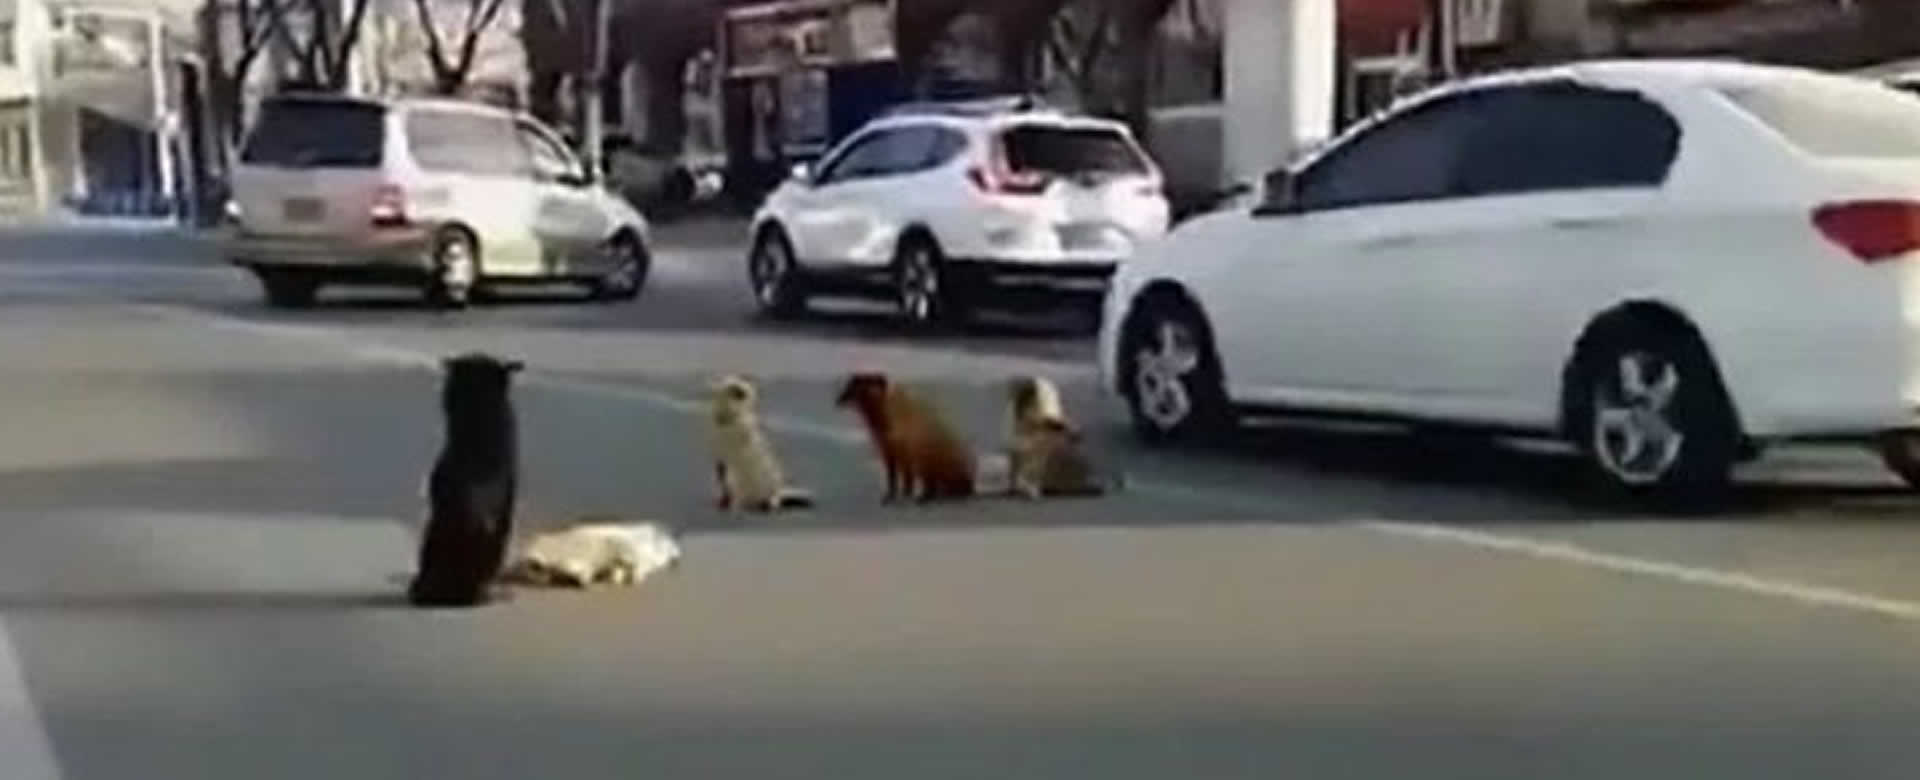 Perros callejeros se negaban a dejar a su compañero fallecido